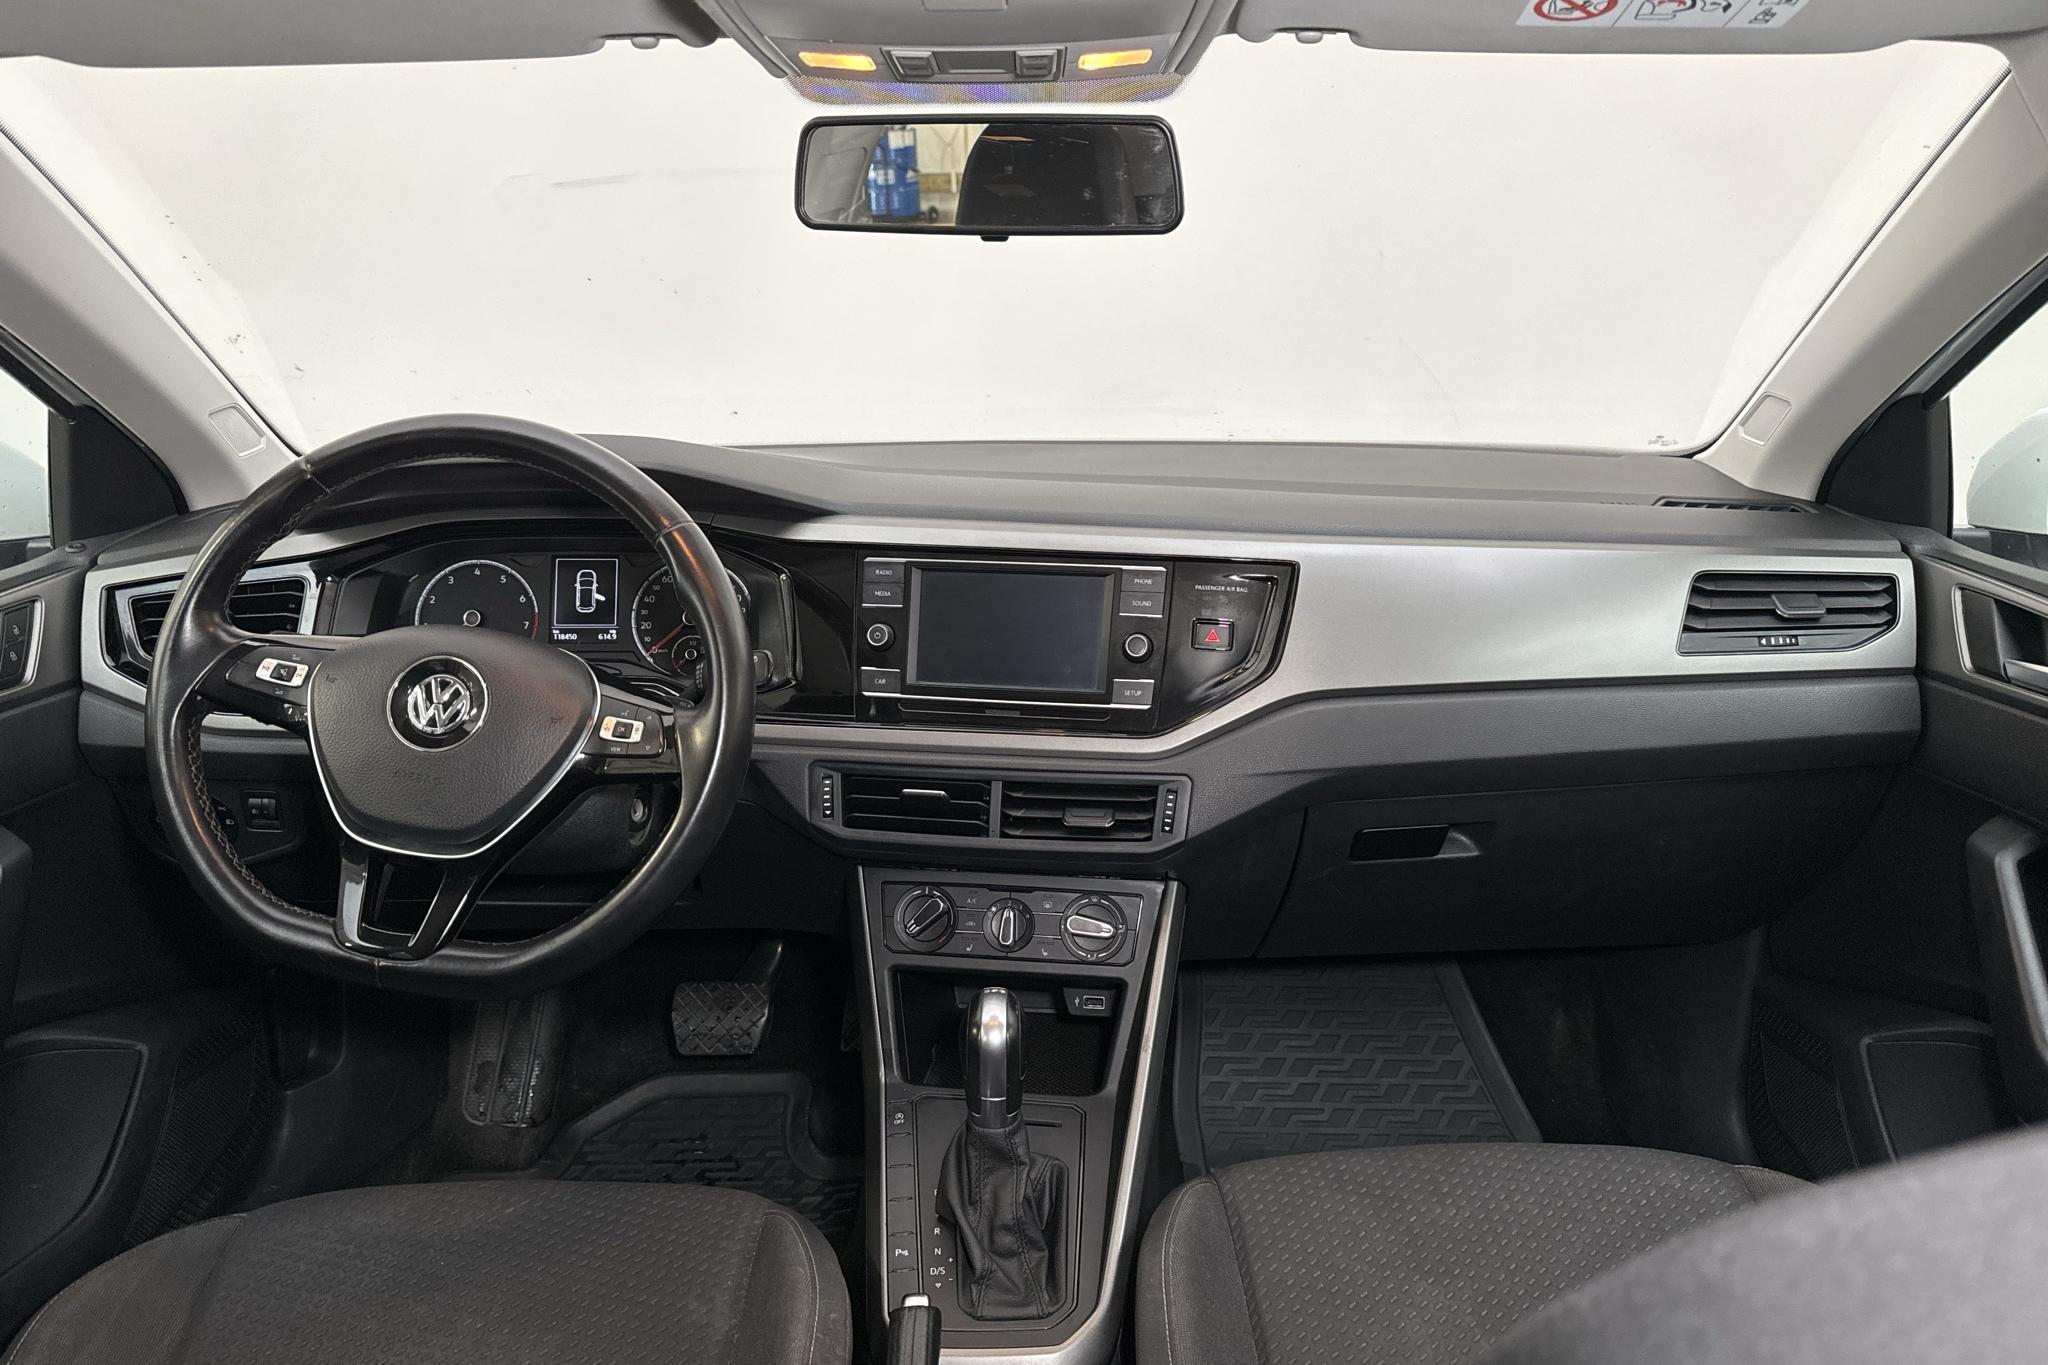 VW Polo 1.0 TSI 5dr (95hk) - 118 440 km - Automatic - white - 2018